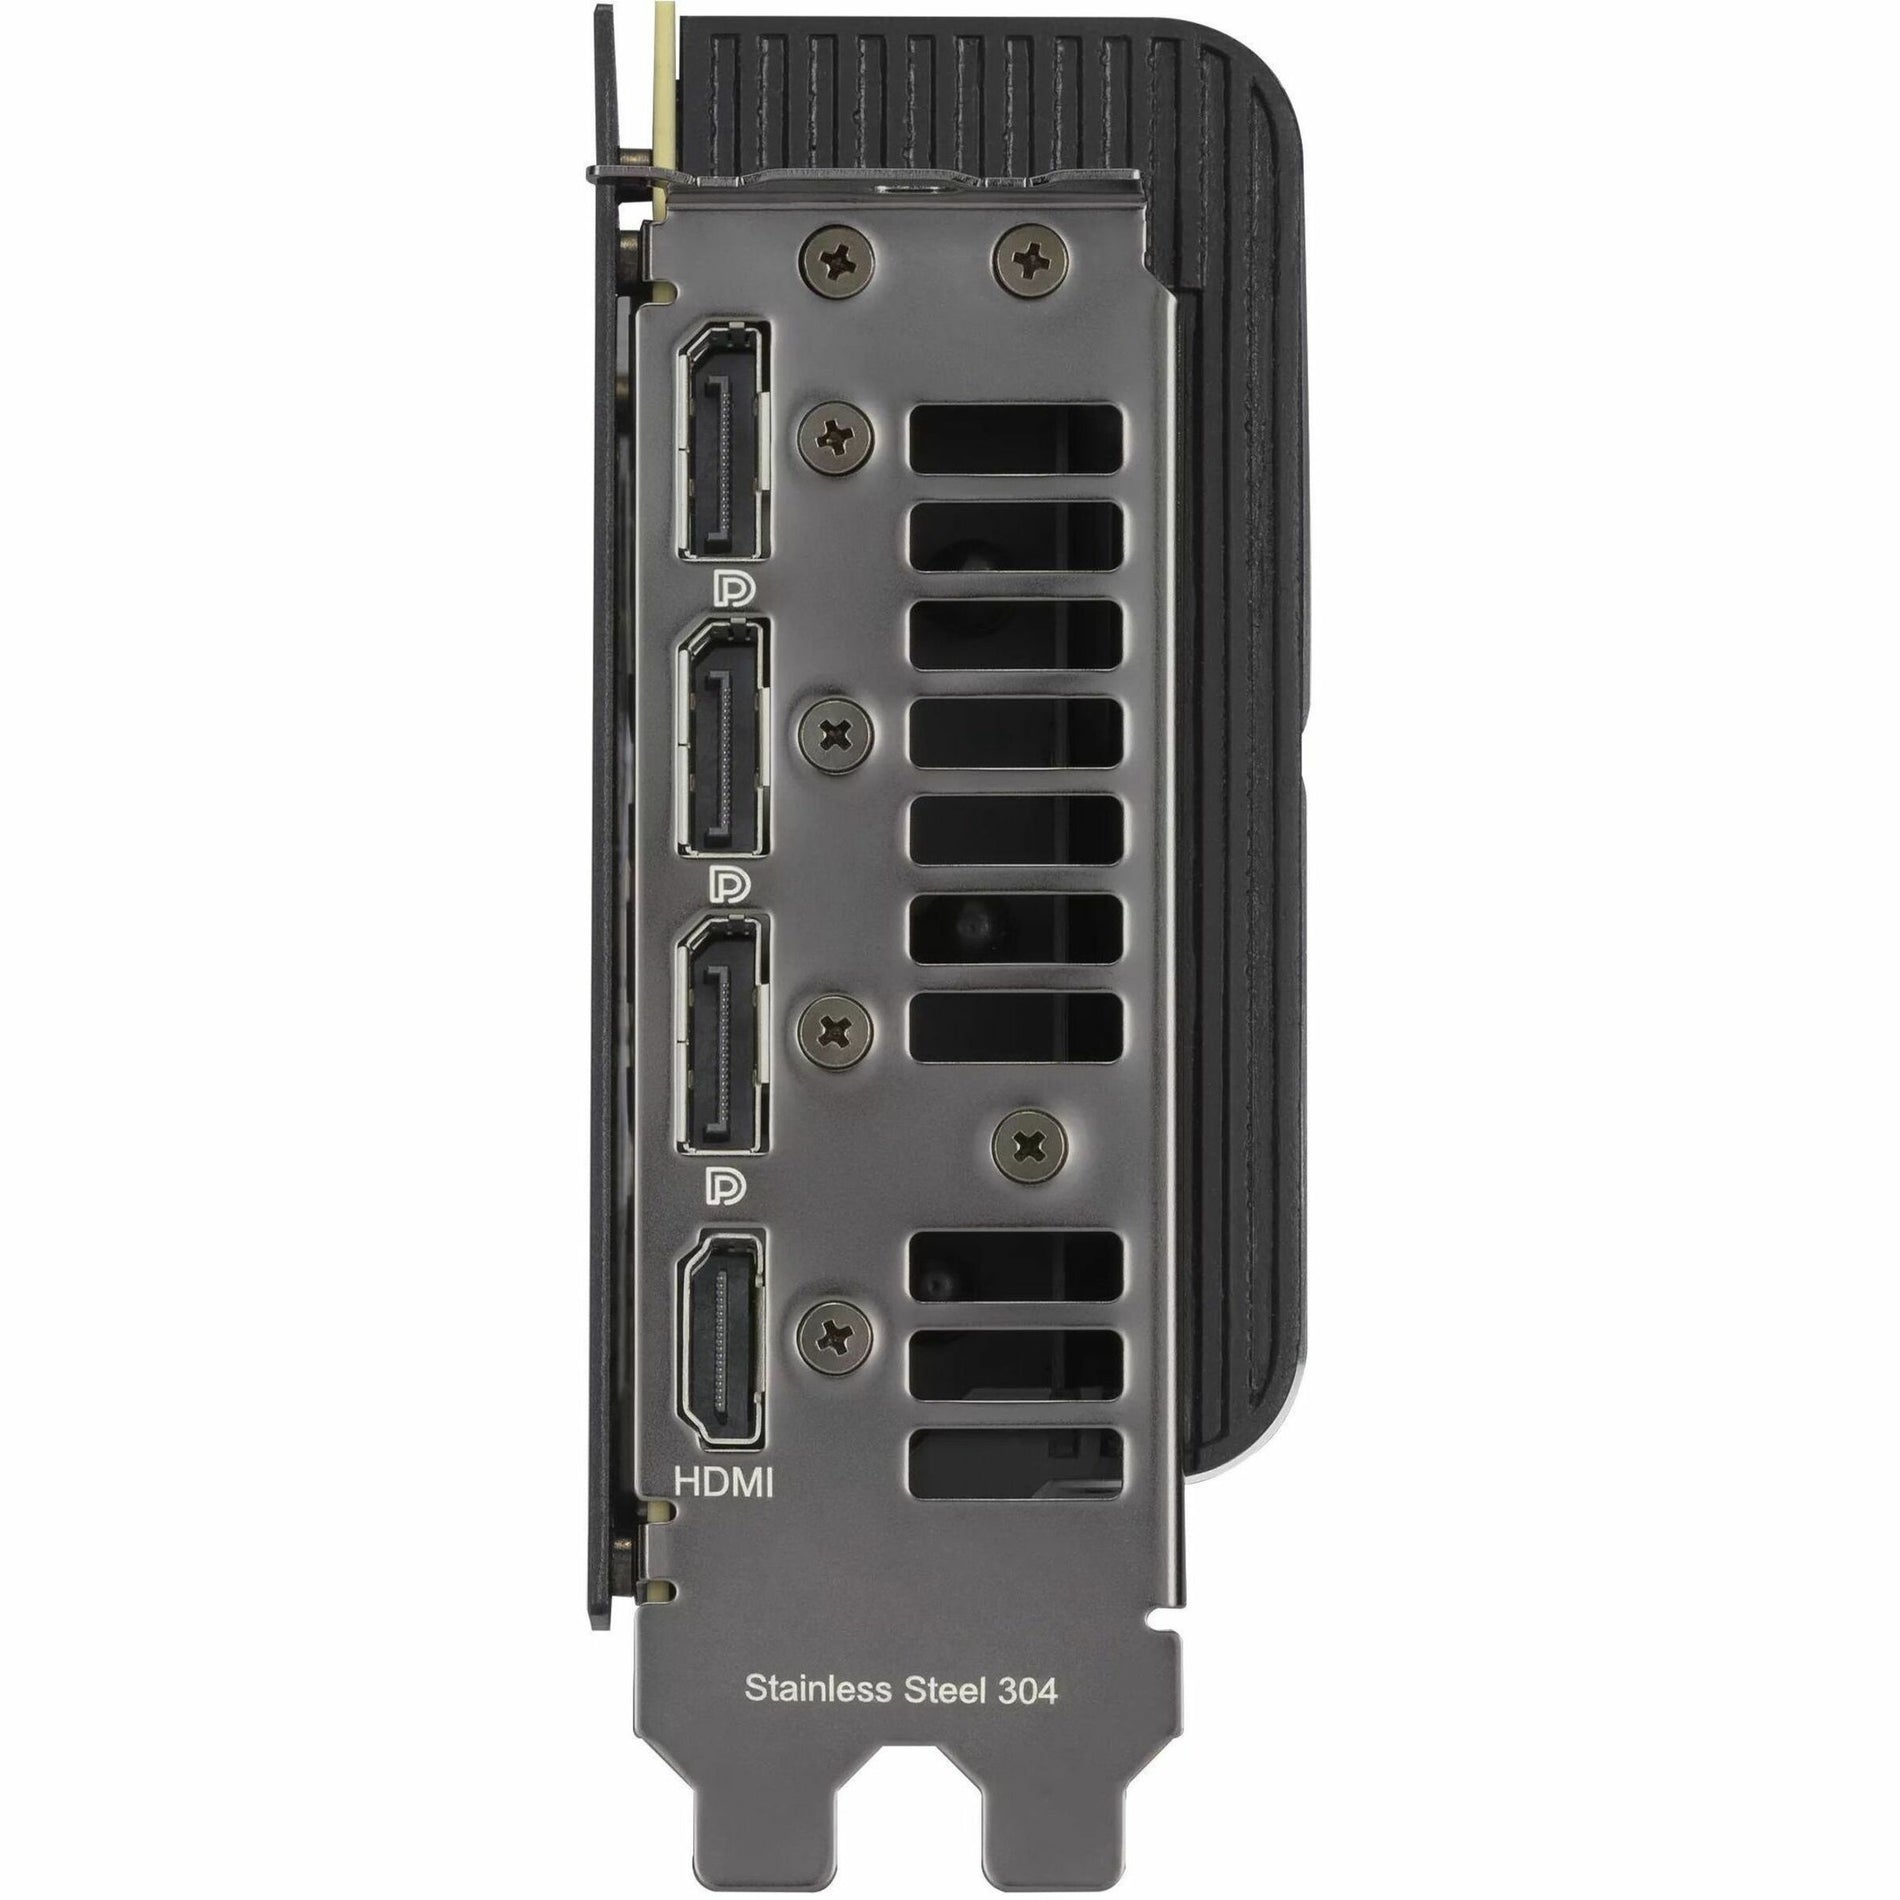 Asus PROART-RTX4080-16G ProArt GeForce RTX 4080 16GB GDDR6X Graphic Card, PCIe 4.0, DLSS 3, HDMI 2.1a, DisplayPort 1.4a